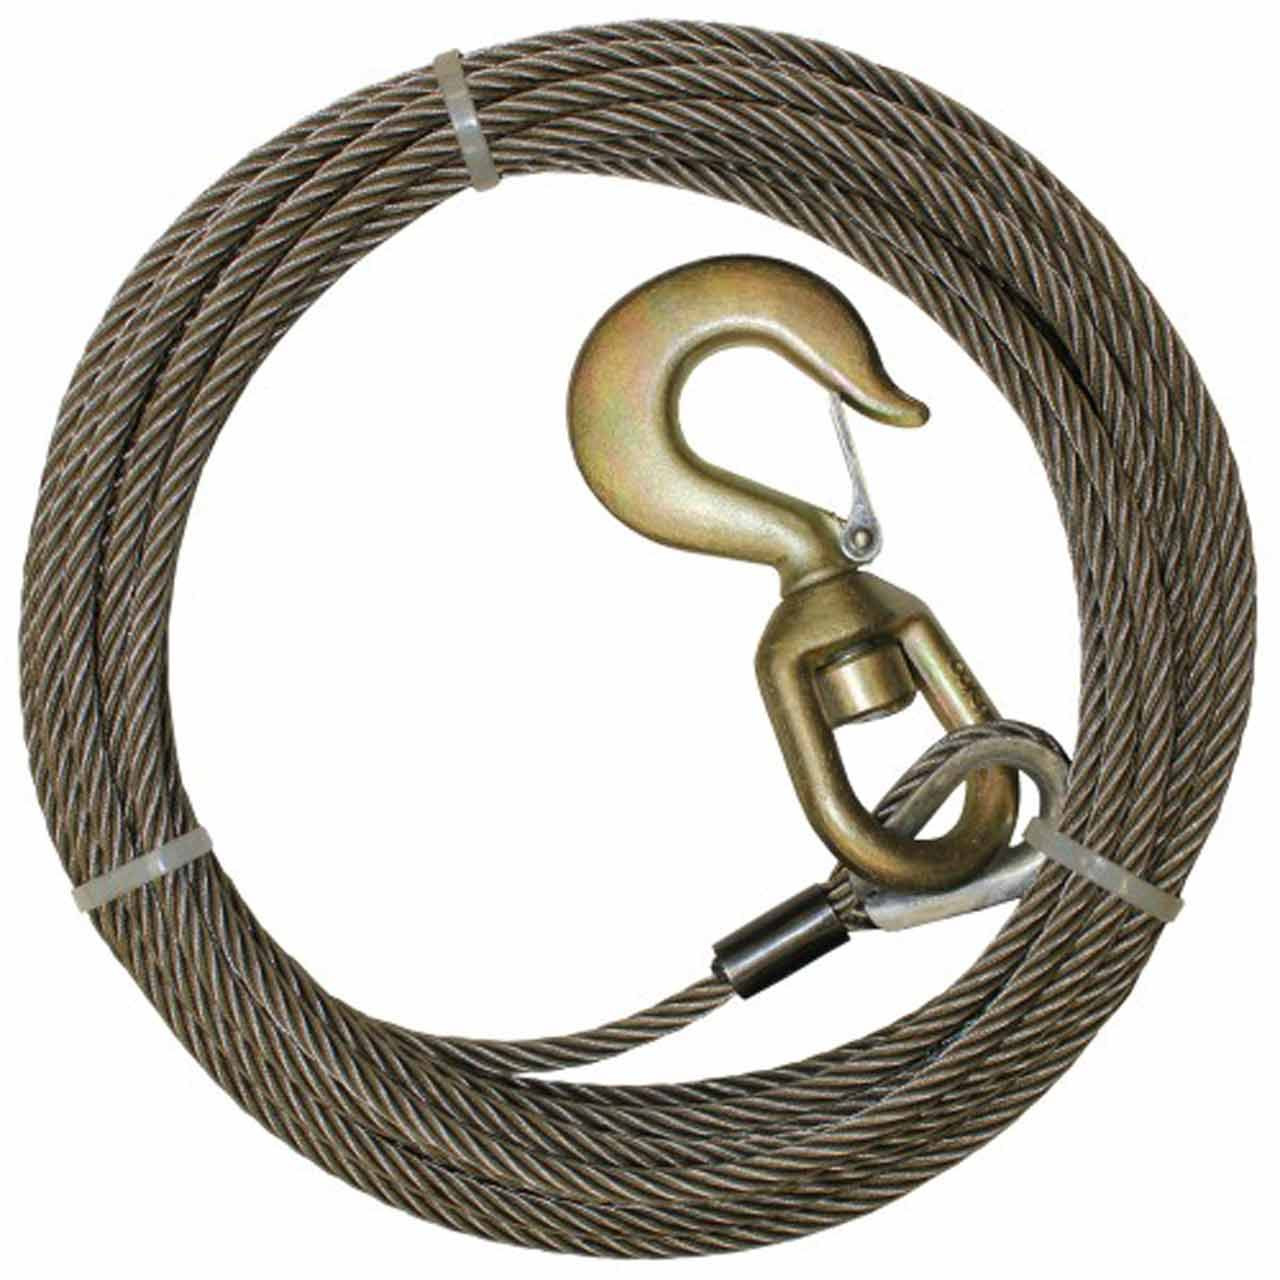 Steel Wire Rope Assembly w/Alloy Swivel Hook 3/8” x 56